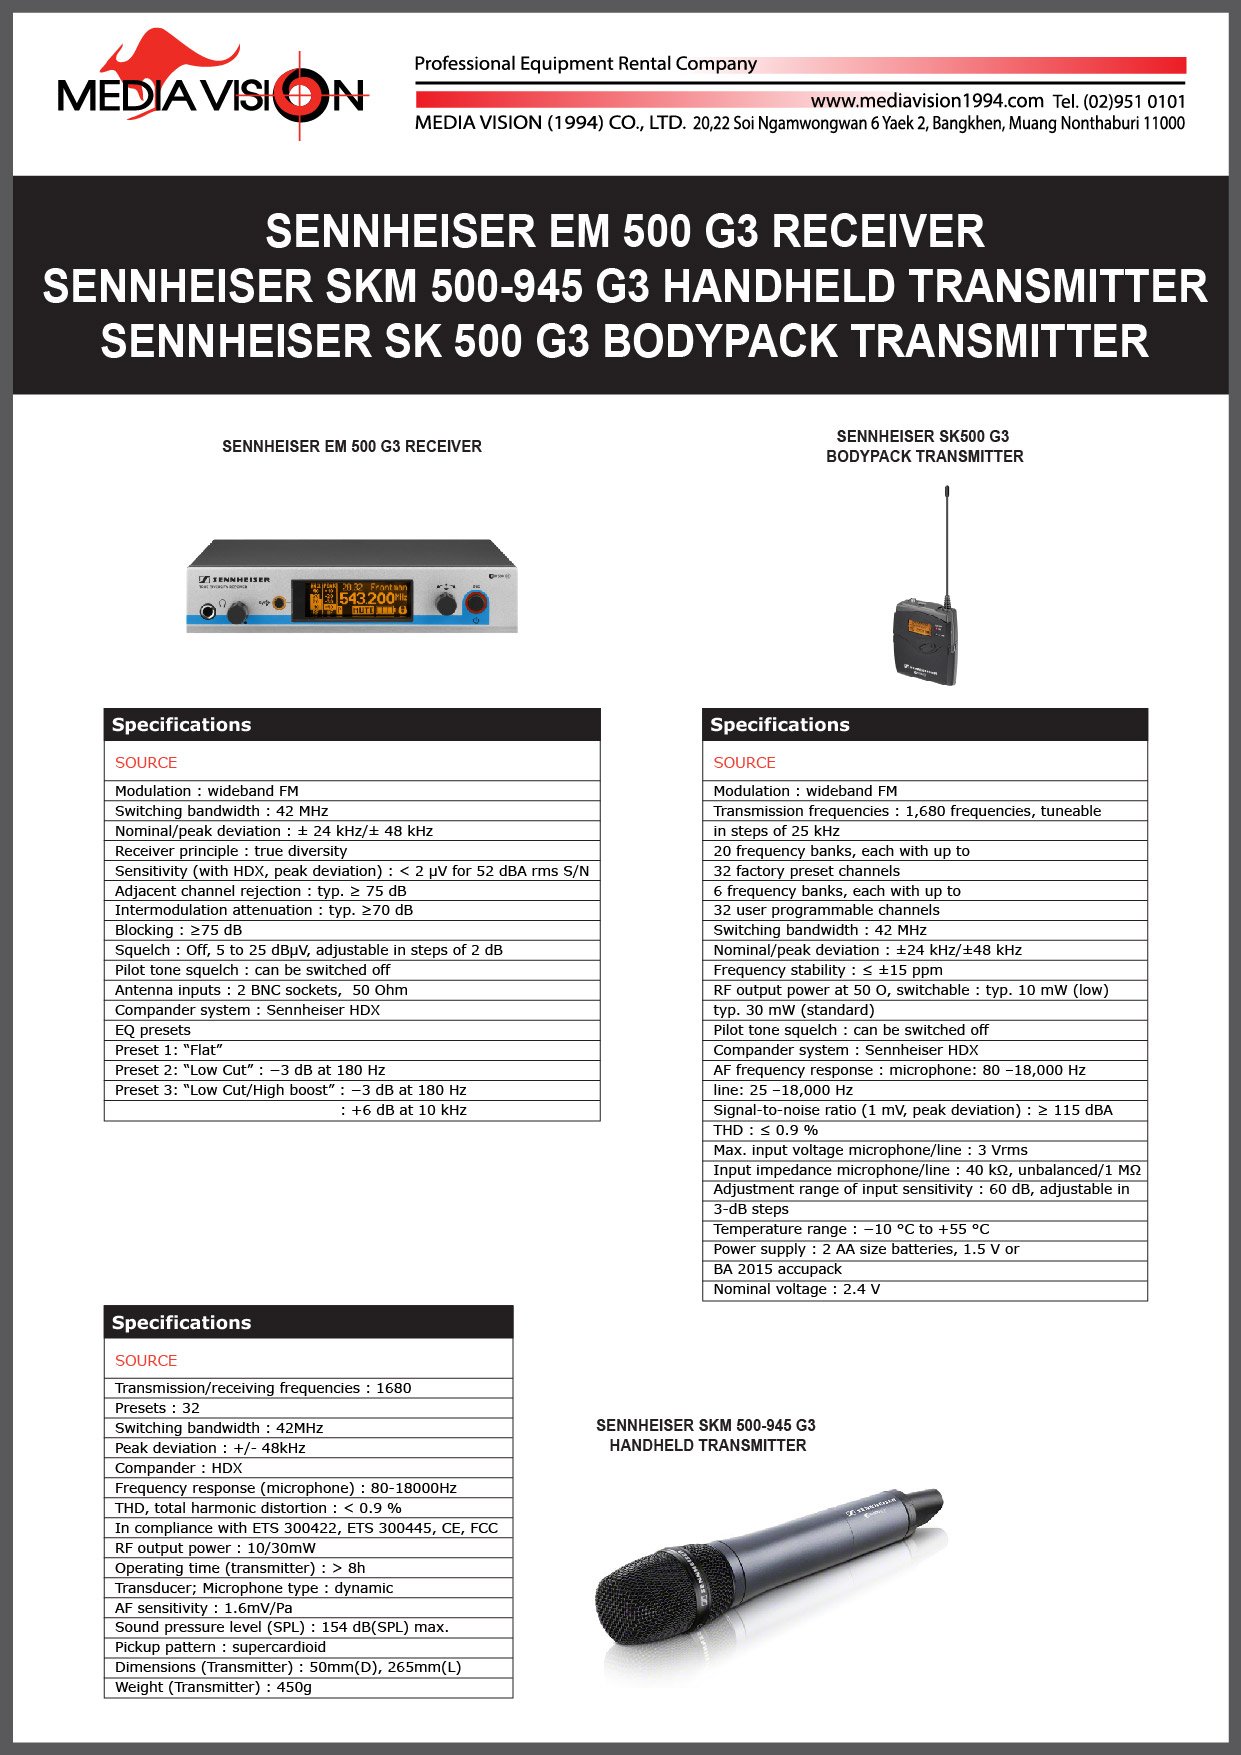 SENNHEISER EM 500 G3 RECEIVER , SENNHEISER SKM 500-945 G3 HANDHELD TRANSMITTER, SENNHEISER SK 500 G3 BODYPACK TRANSMITTER